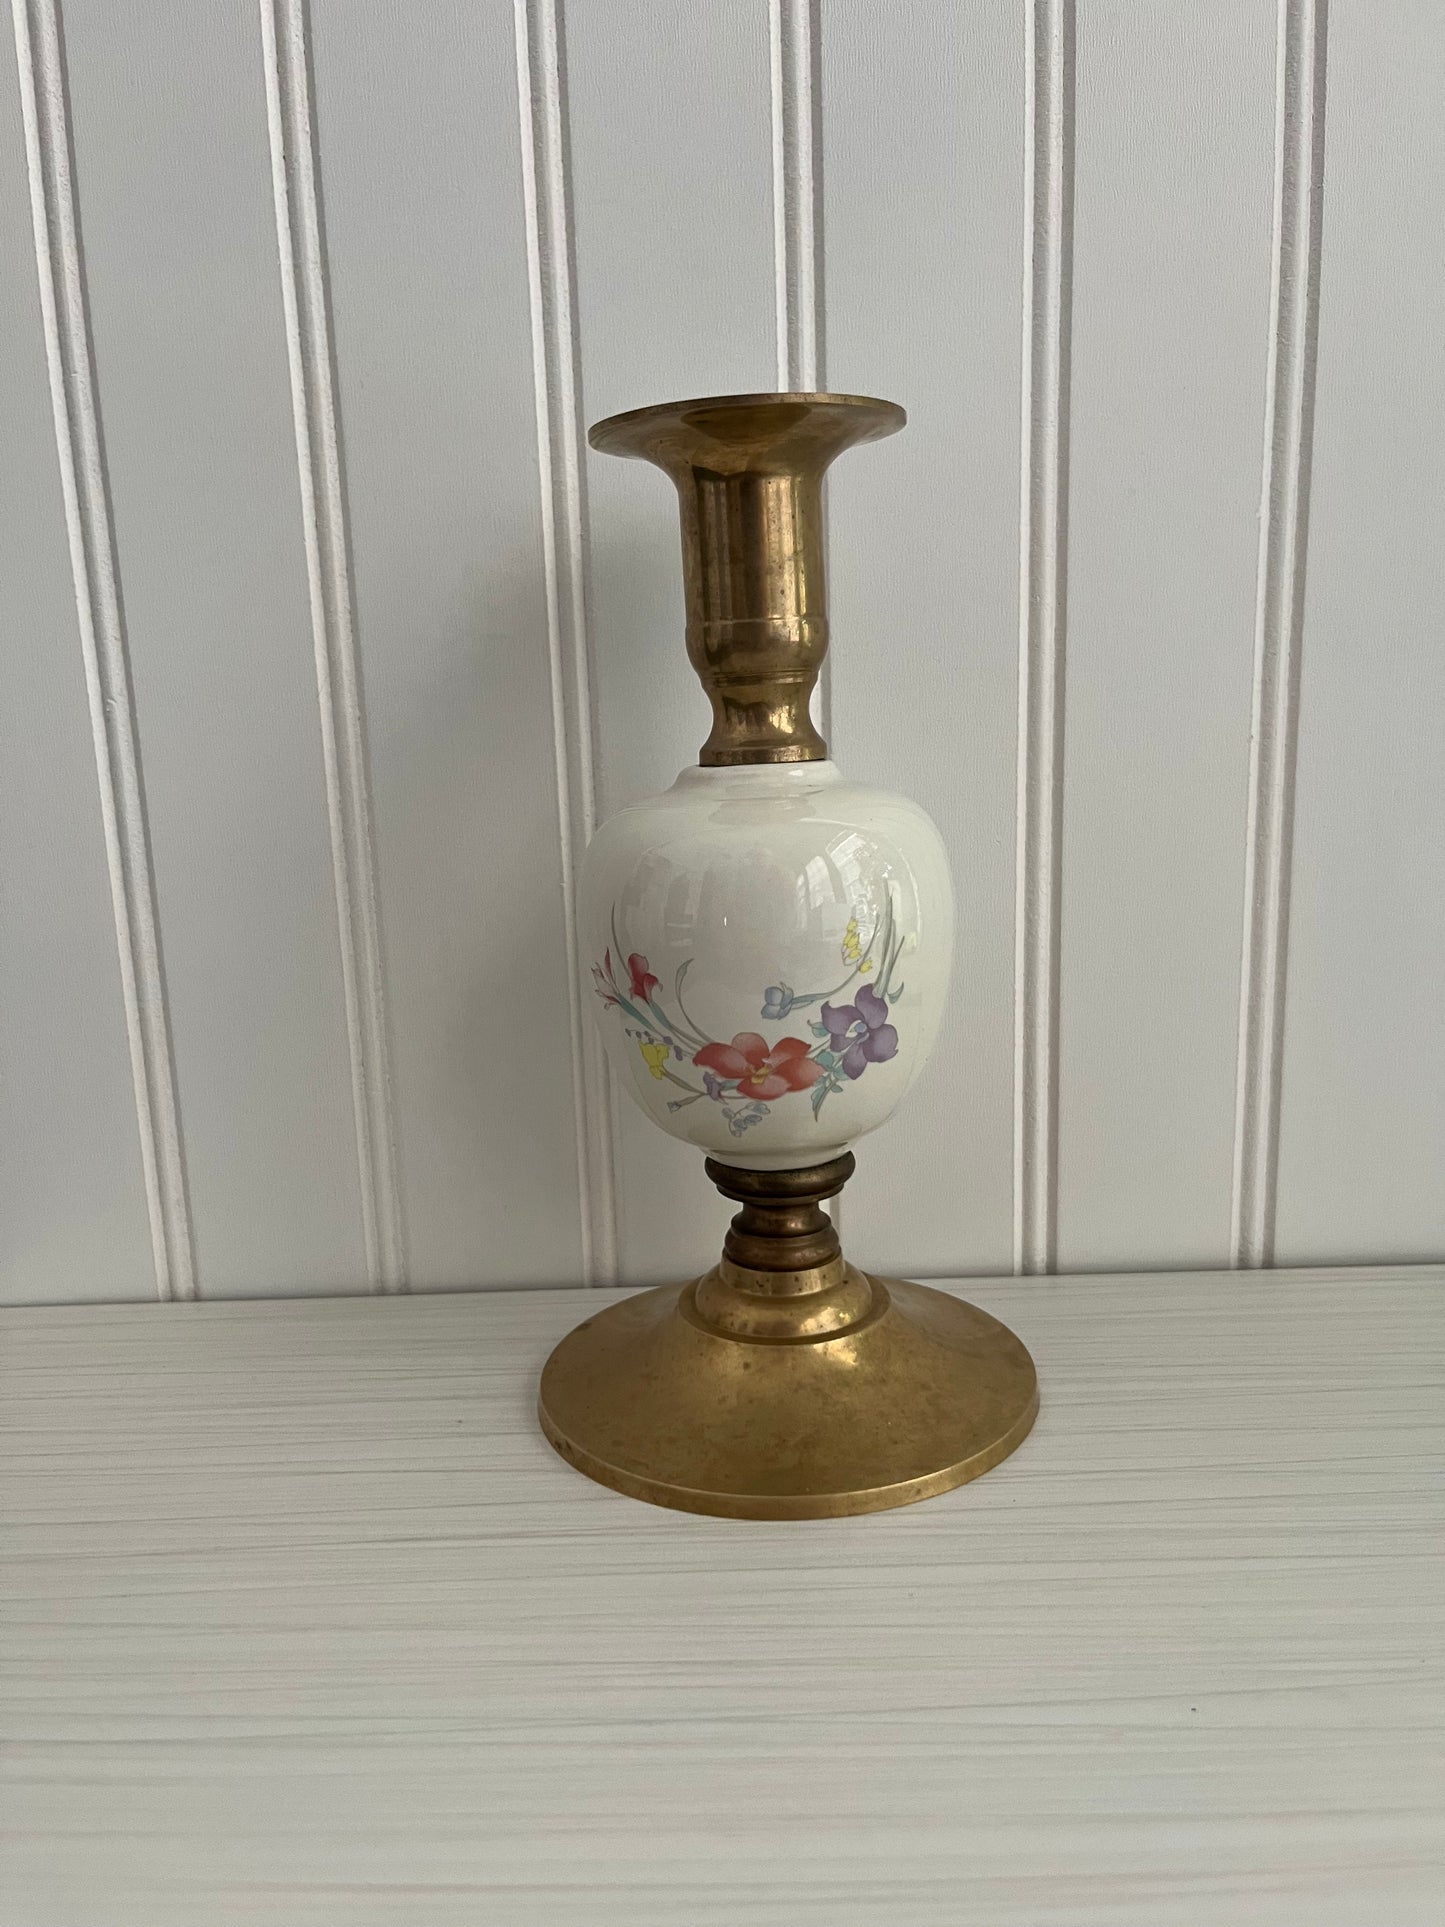 Elegant Vintage Brass Taper Candlestick with Porcelain Floral Bouquet Design